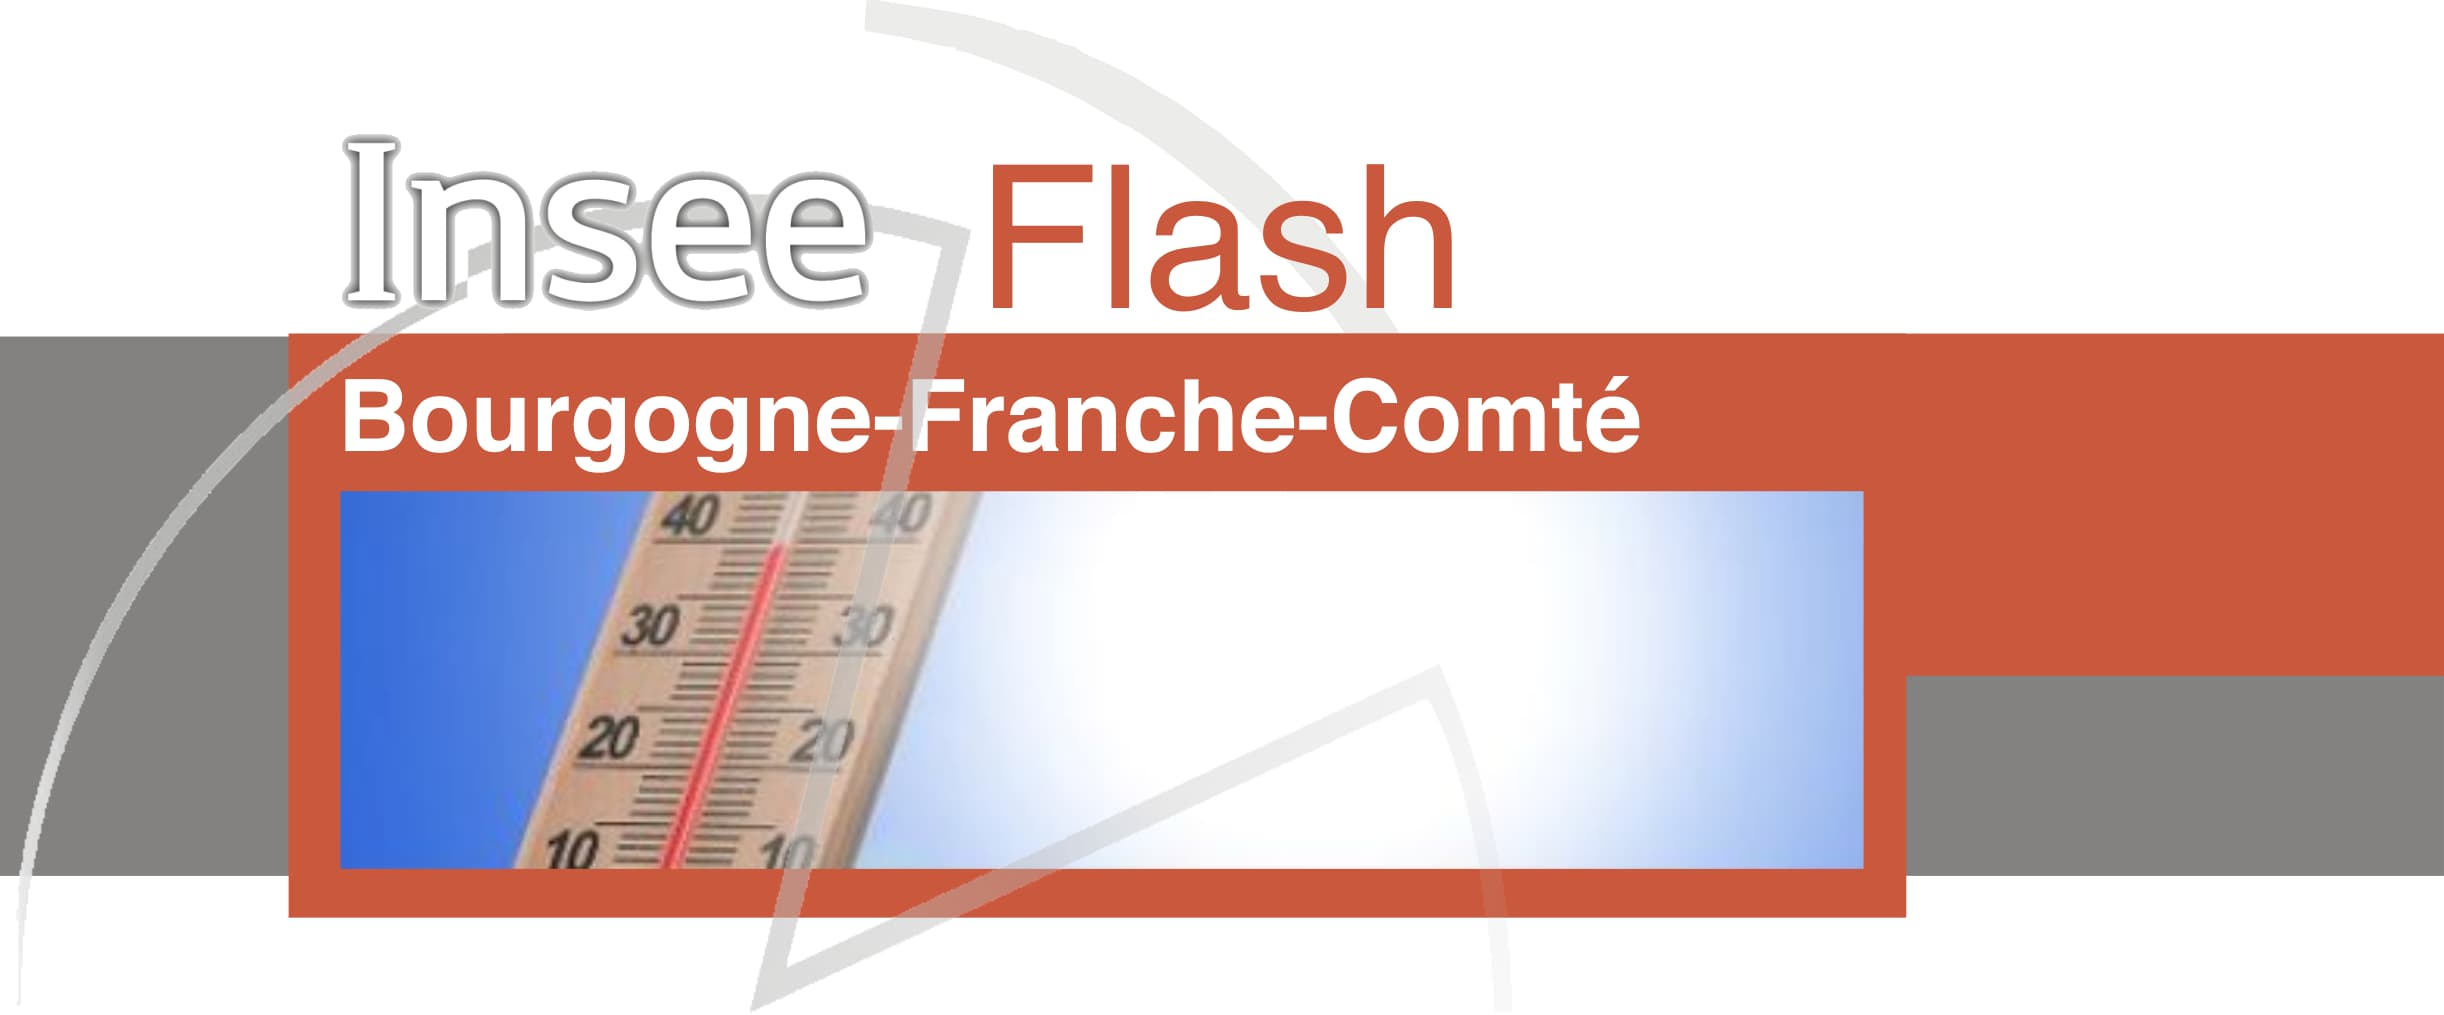 Insee Flash Bourgogne-Franche-Comté